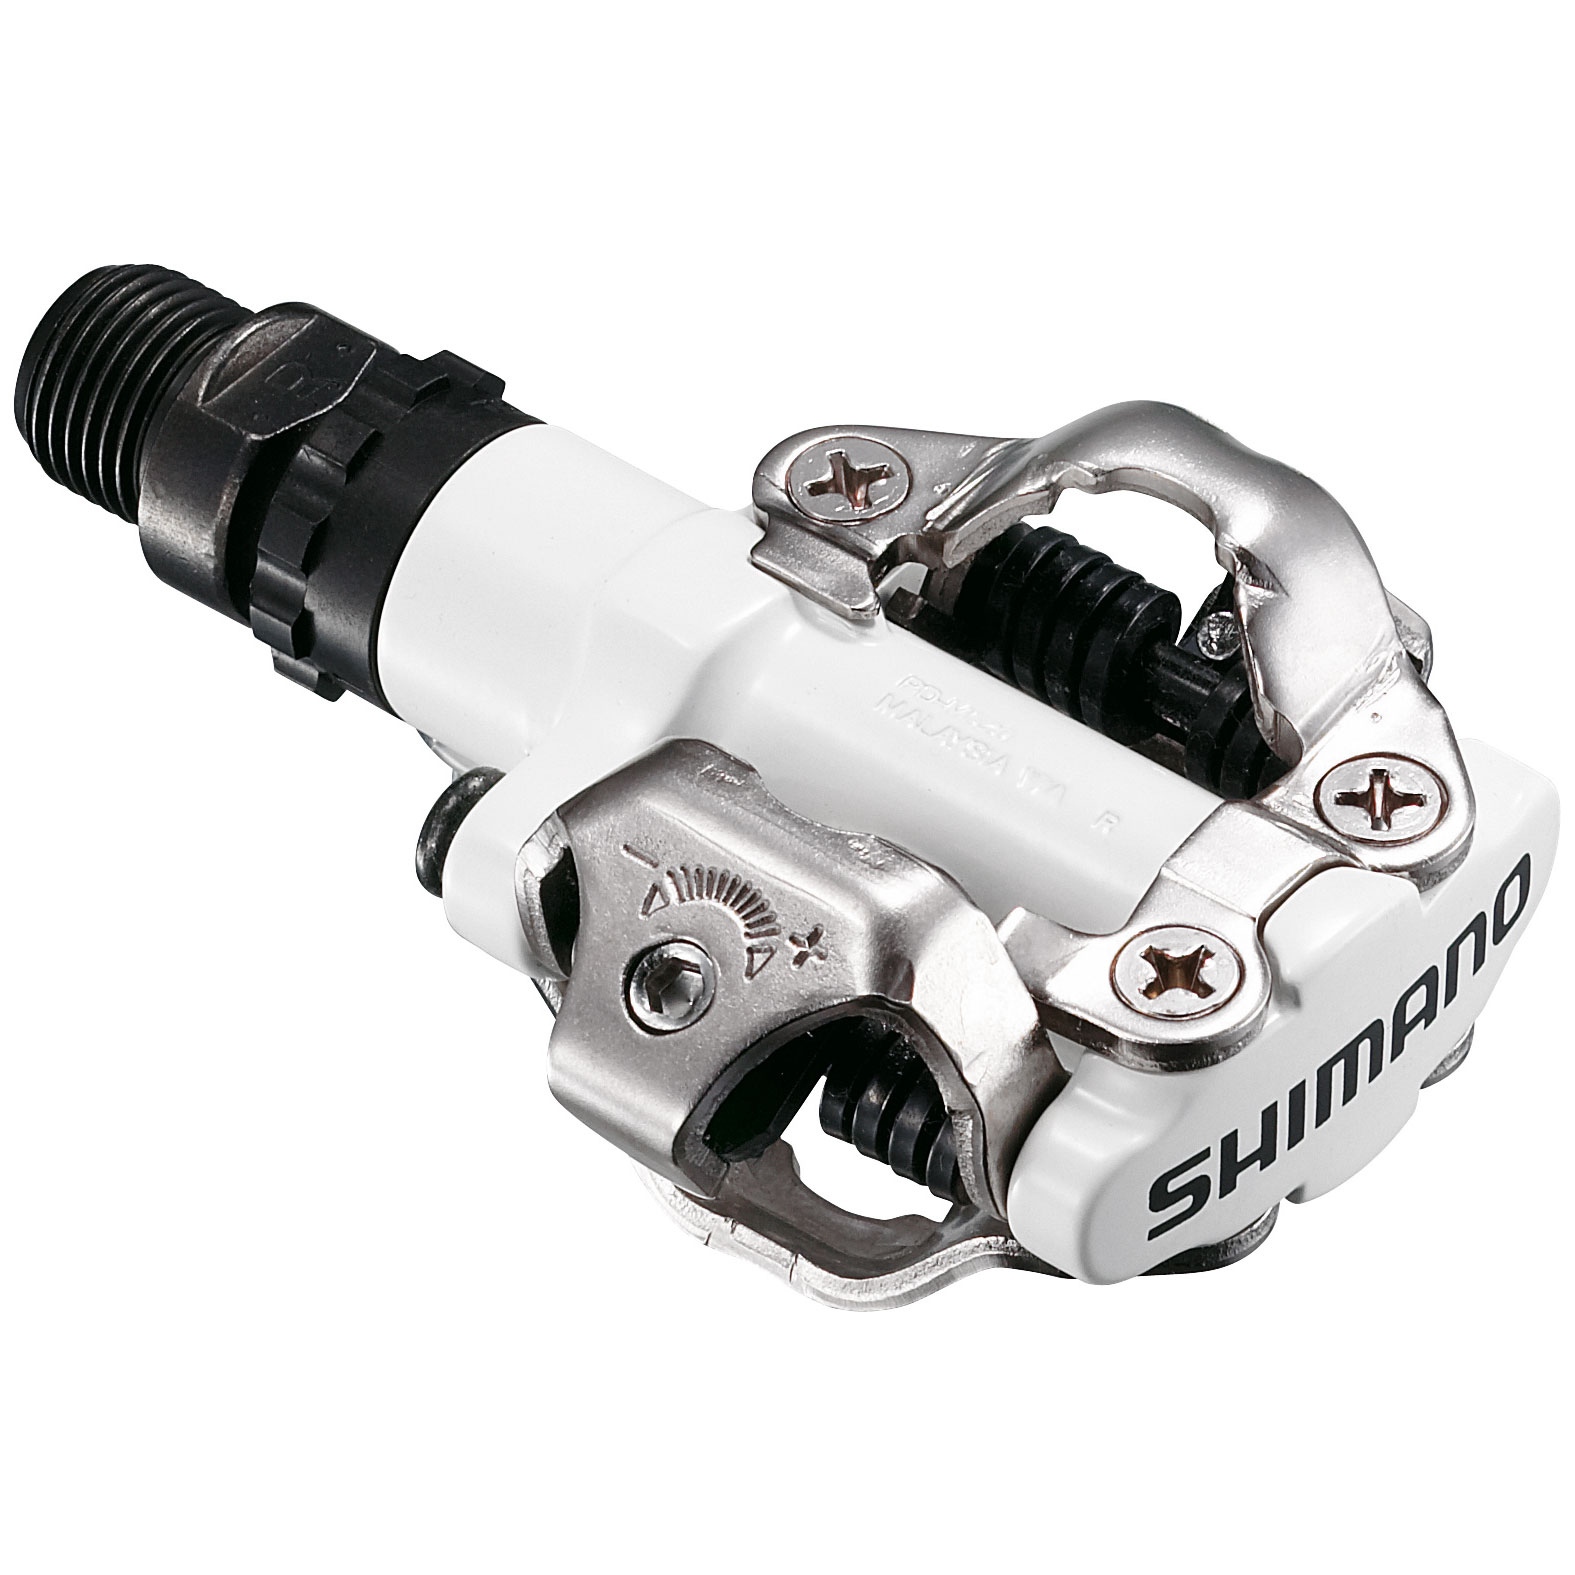 Produktbild von Shimano PD-M520 SPD Pedal - weiß